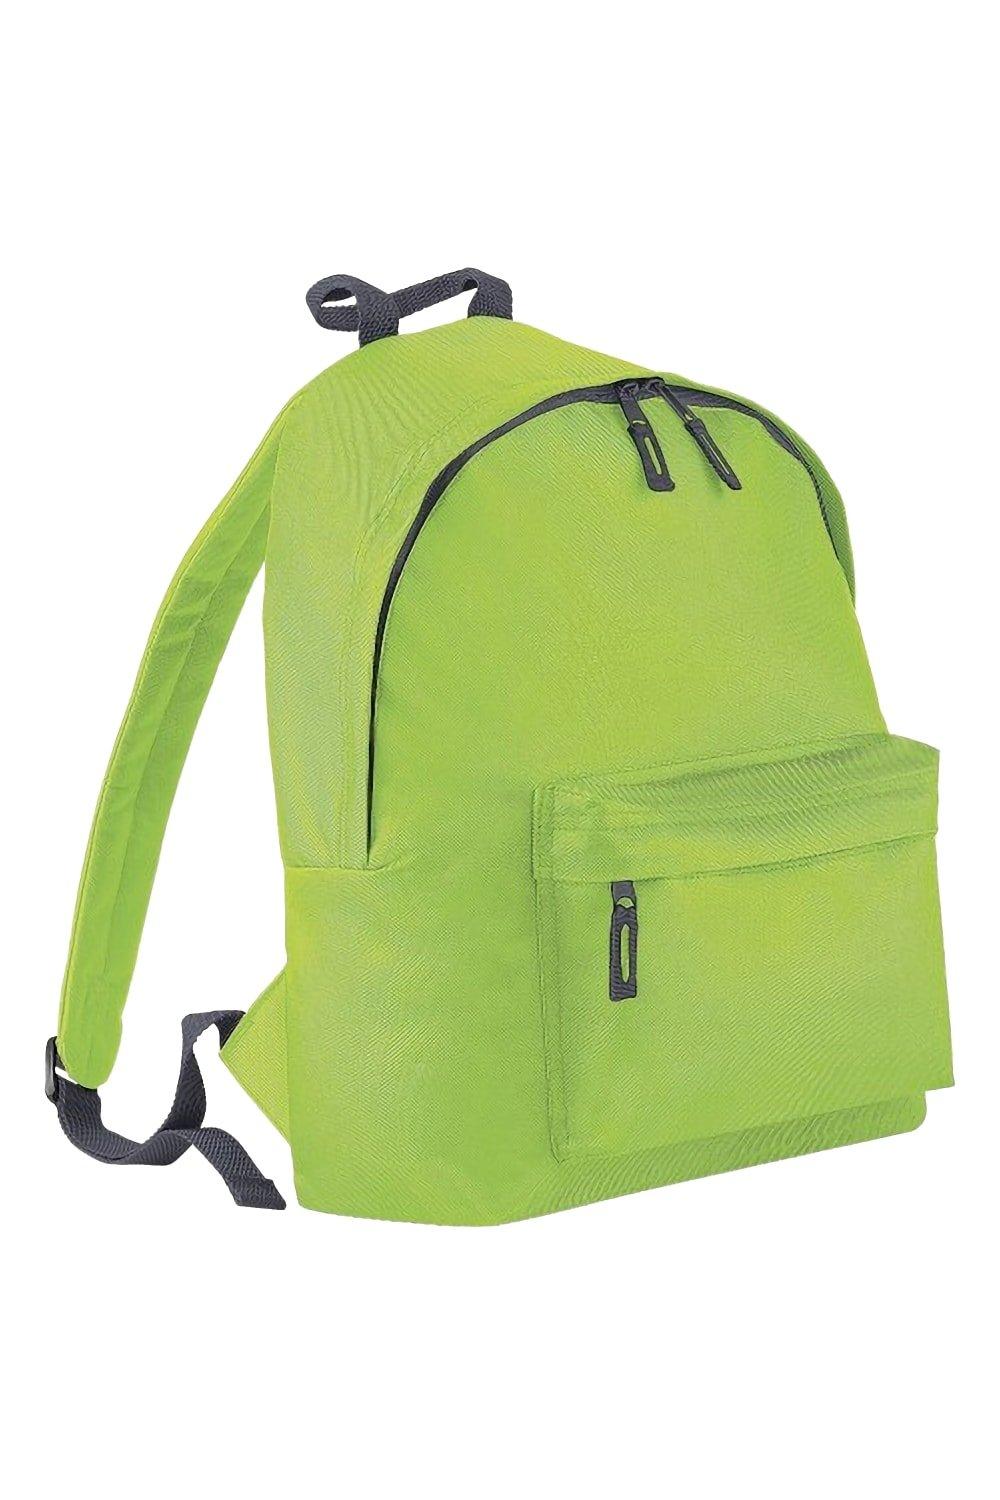 яр 19 весенний венок электронная схема Модный рюкзак / рюкзак (14 литров) Bagbase, зеленый